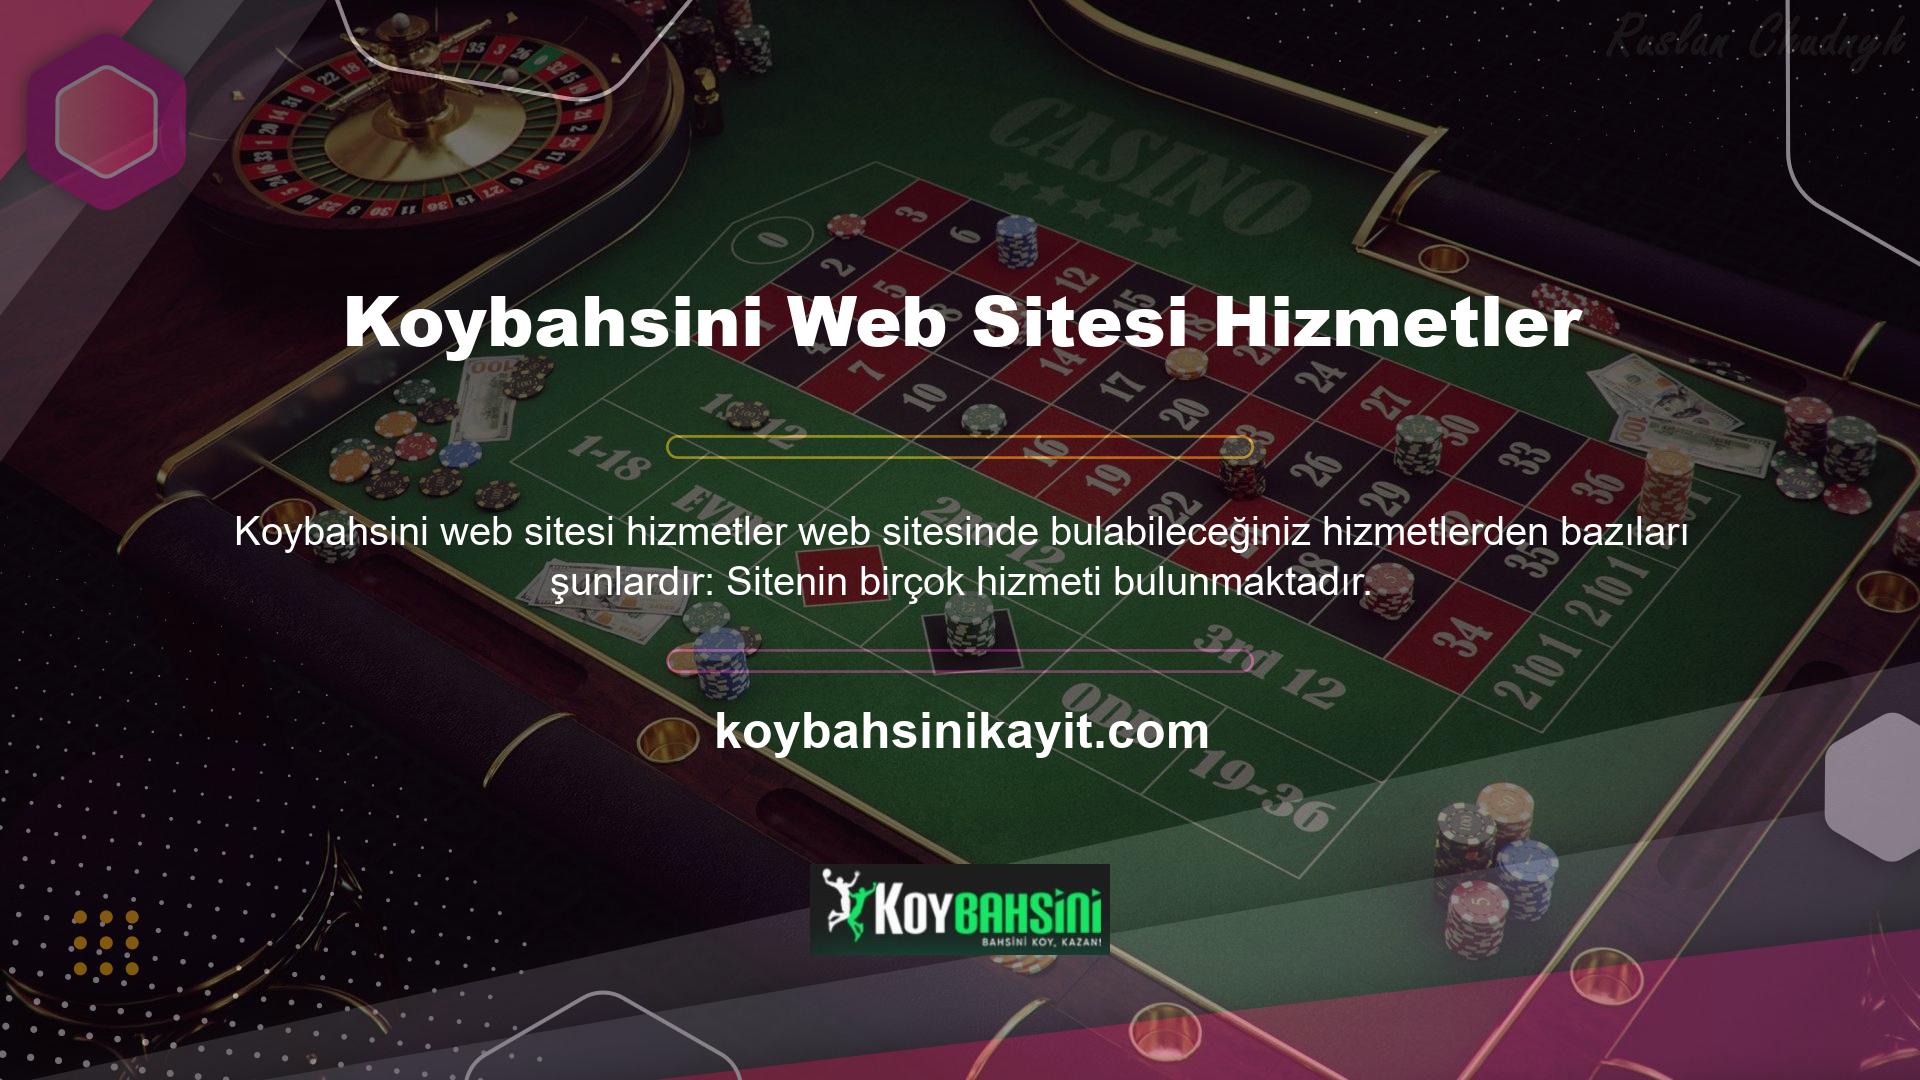 Sitenin bu hizmetlerinden yararlanmak için üyelik işlemini ve Koybahsini kaydını tamamlamak yeterlidir